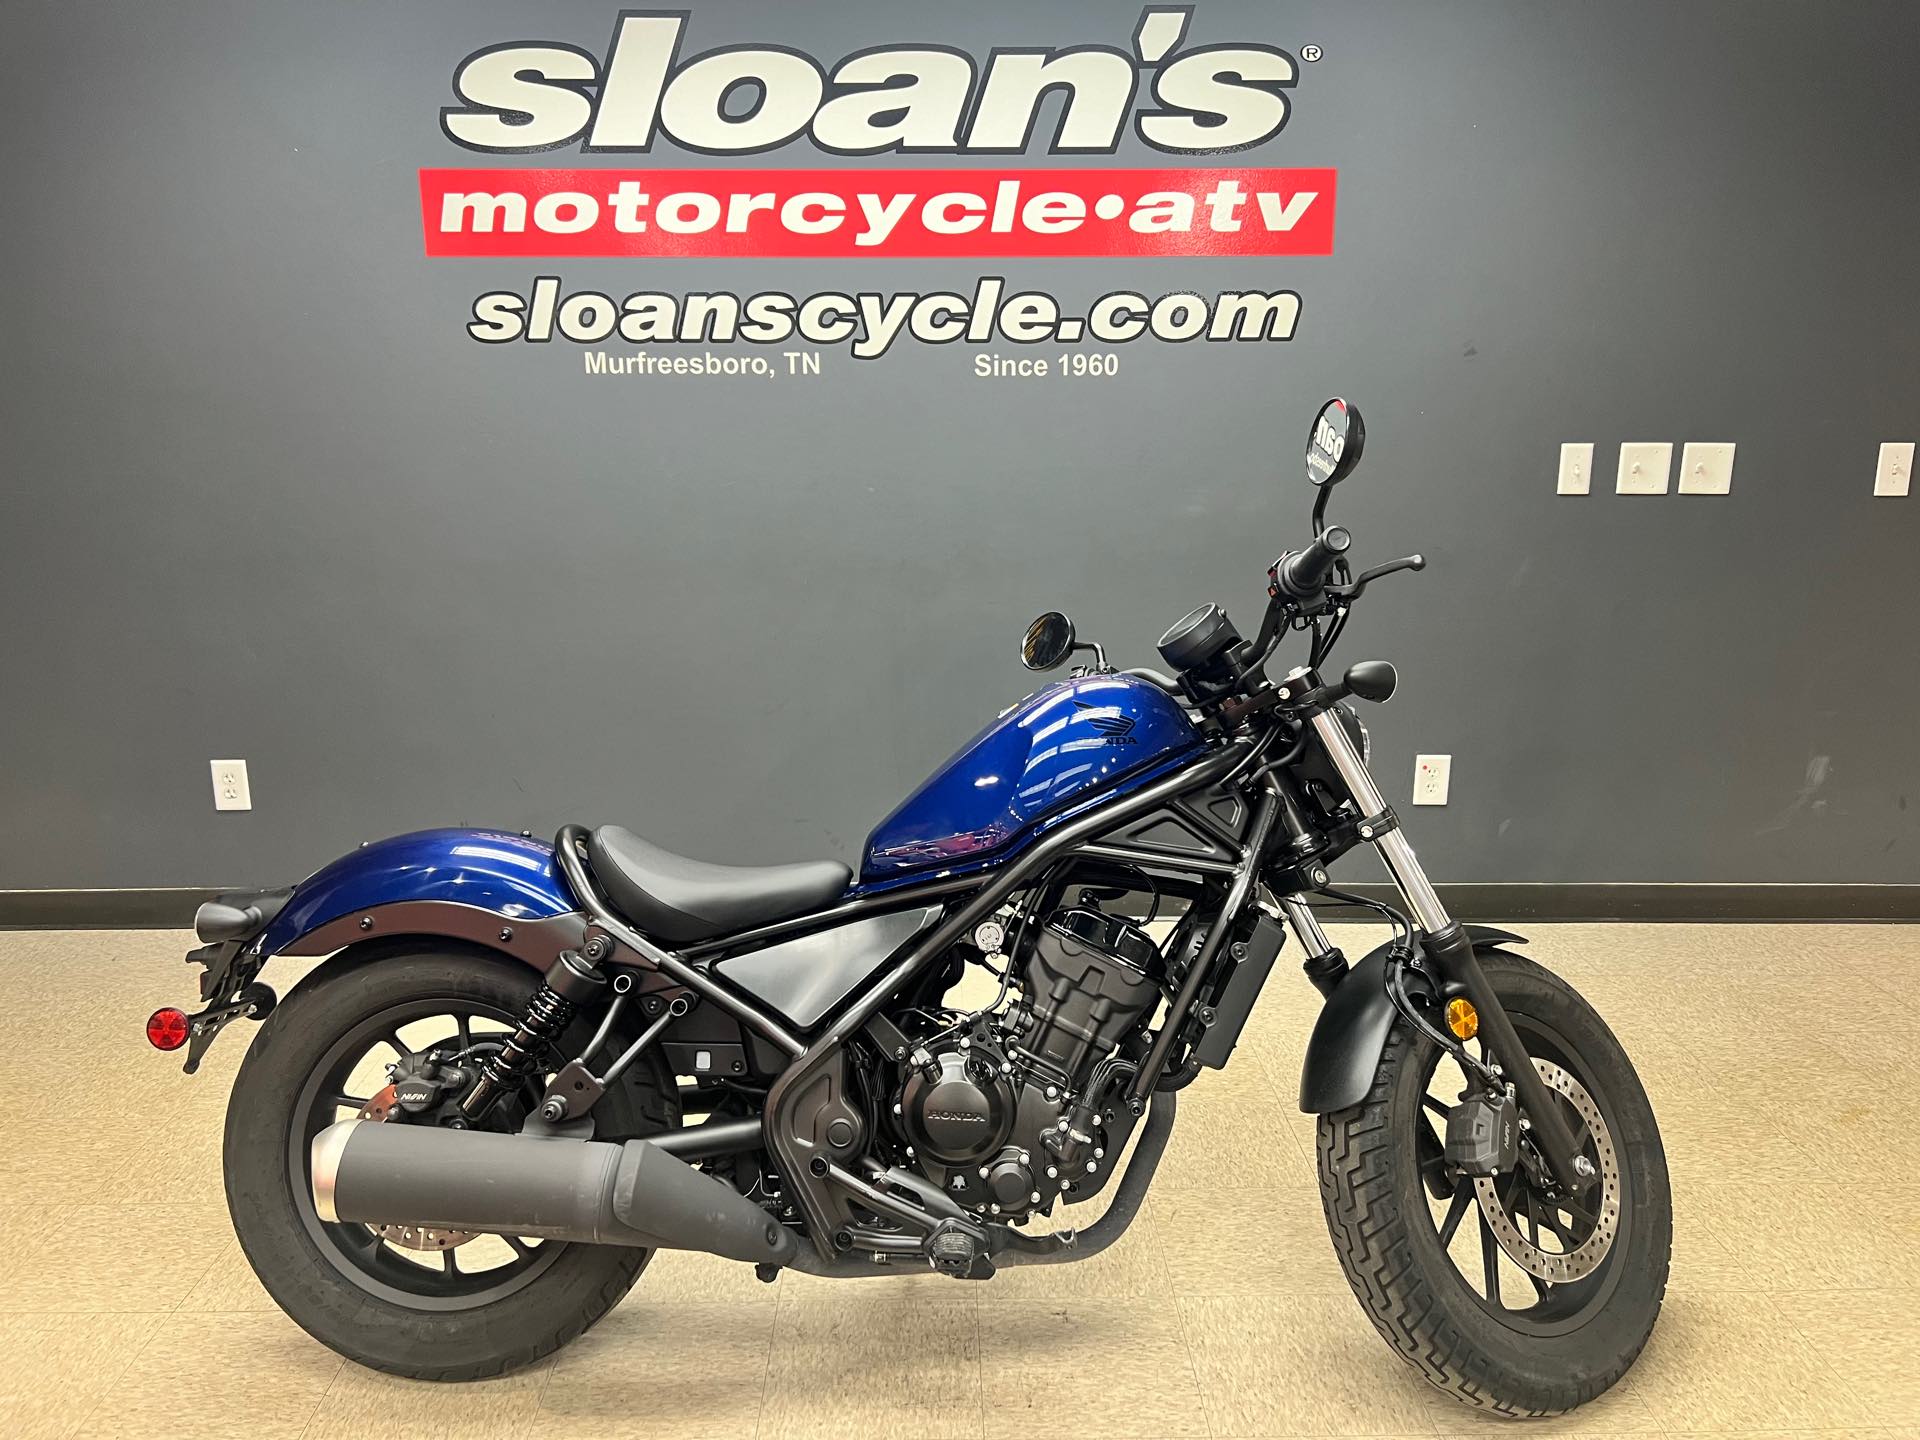 2021 Honda Rebel 300 ABS at Sloans Motorcycle ATV, Murfreesboro, TN, 37129